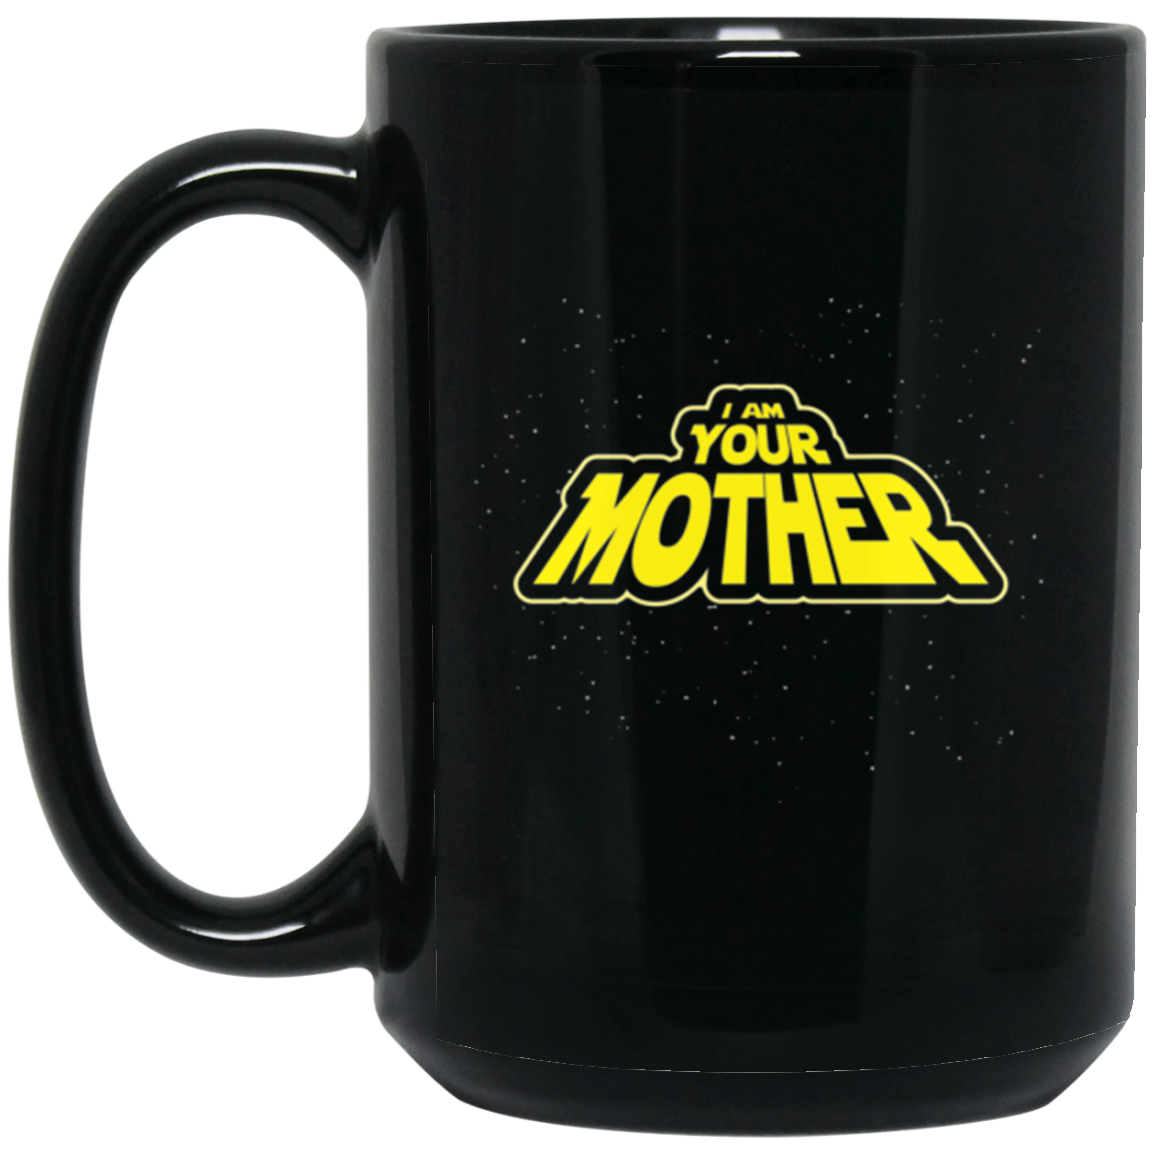 I am your Mother 15 oz. Black Mug